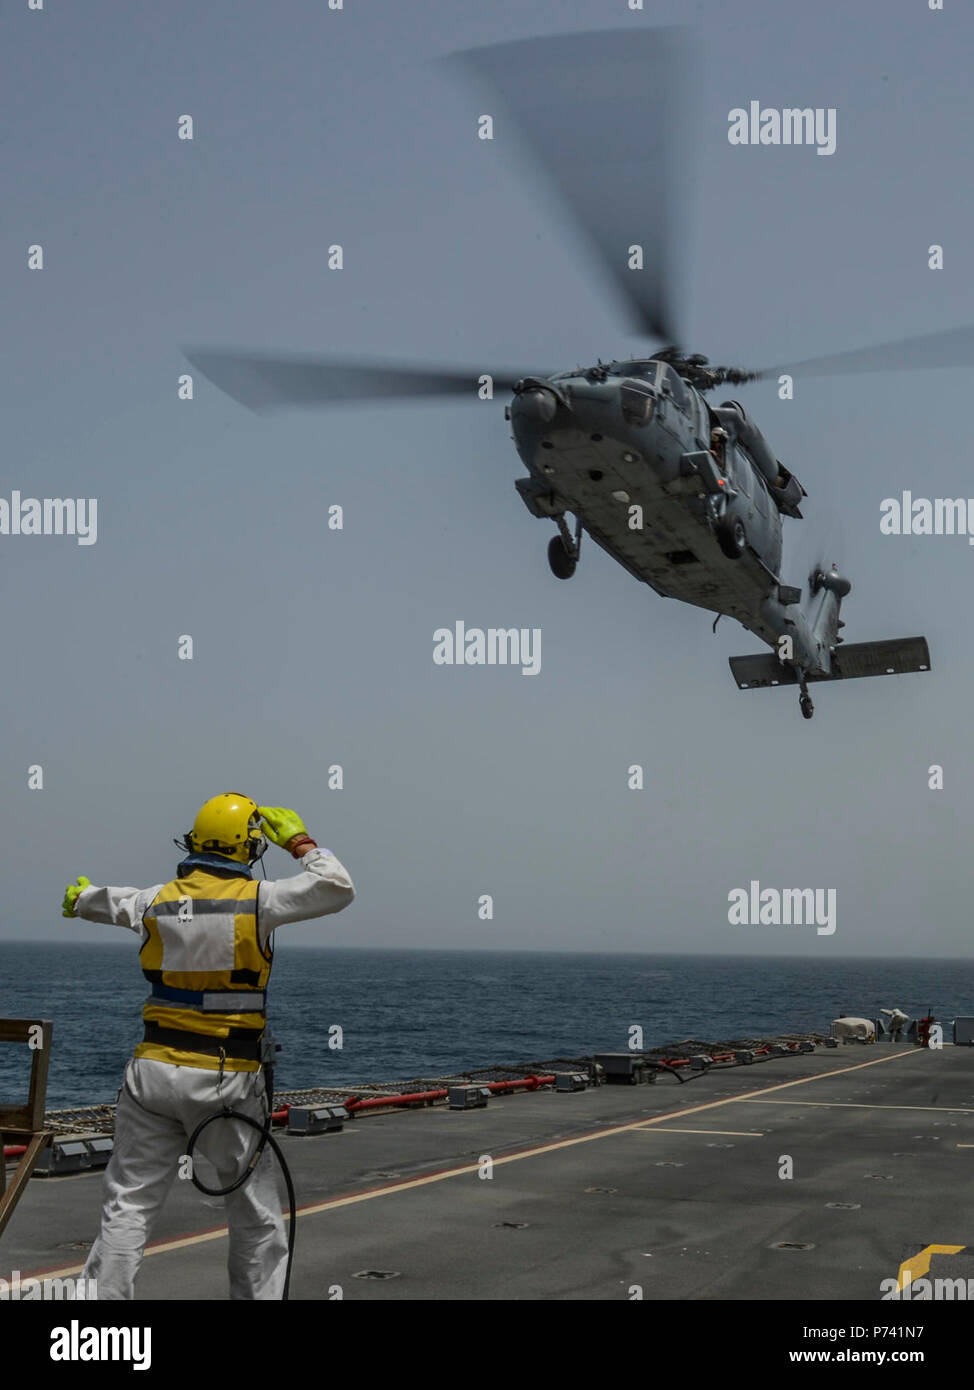 5 FLOTTE VERANTWORTUNGSBEREICH (15. Mai 2013) Schiffe Warrant Officer Steve Cooper Signale an ein SH-60 Sea Hawk Hubschrauber Hubschrauber Meer Combat Squadron (HSC) 26 zugewiesen, während der flugbetrieb an Bord der Royal Fleet Auxiliary amphibisches Schiff RFA Cardigan Bay (L 3009) als Teil eines Pkw transfer während der Internationalen Mine Gegenmaßnahmen Übung (IMCMEX) 2013. IMCMEX 13 enthält die Seestreitkräfte aus mehr als 40 Ländern, deren Schwerpunkt ist die regionale Sicherheit durch meine Gegenmaßnahmen arbeiten in den USA 5 Flotte Verantwortungsbereich zu fördern. Stockfoto